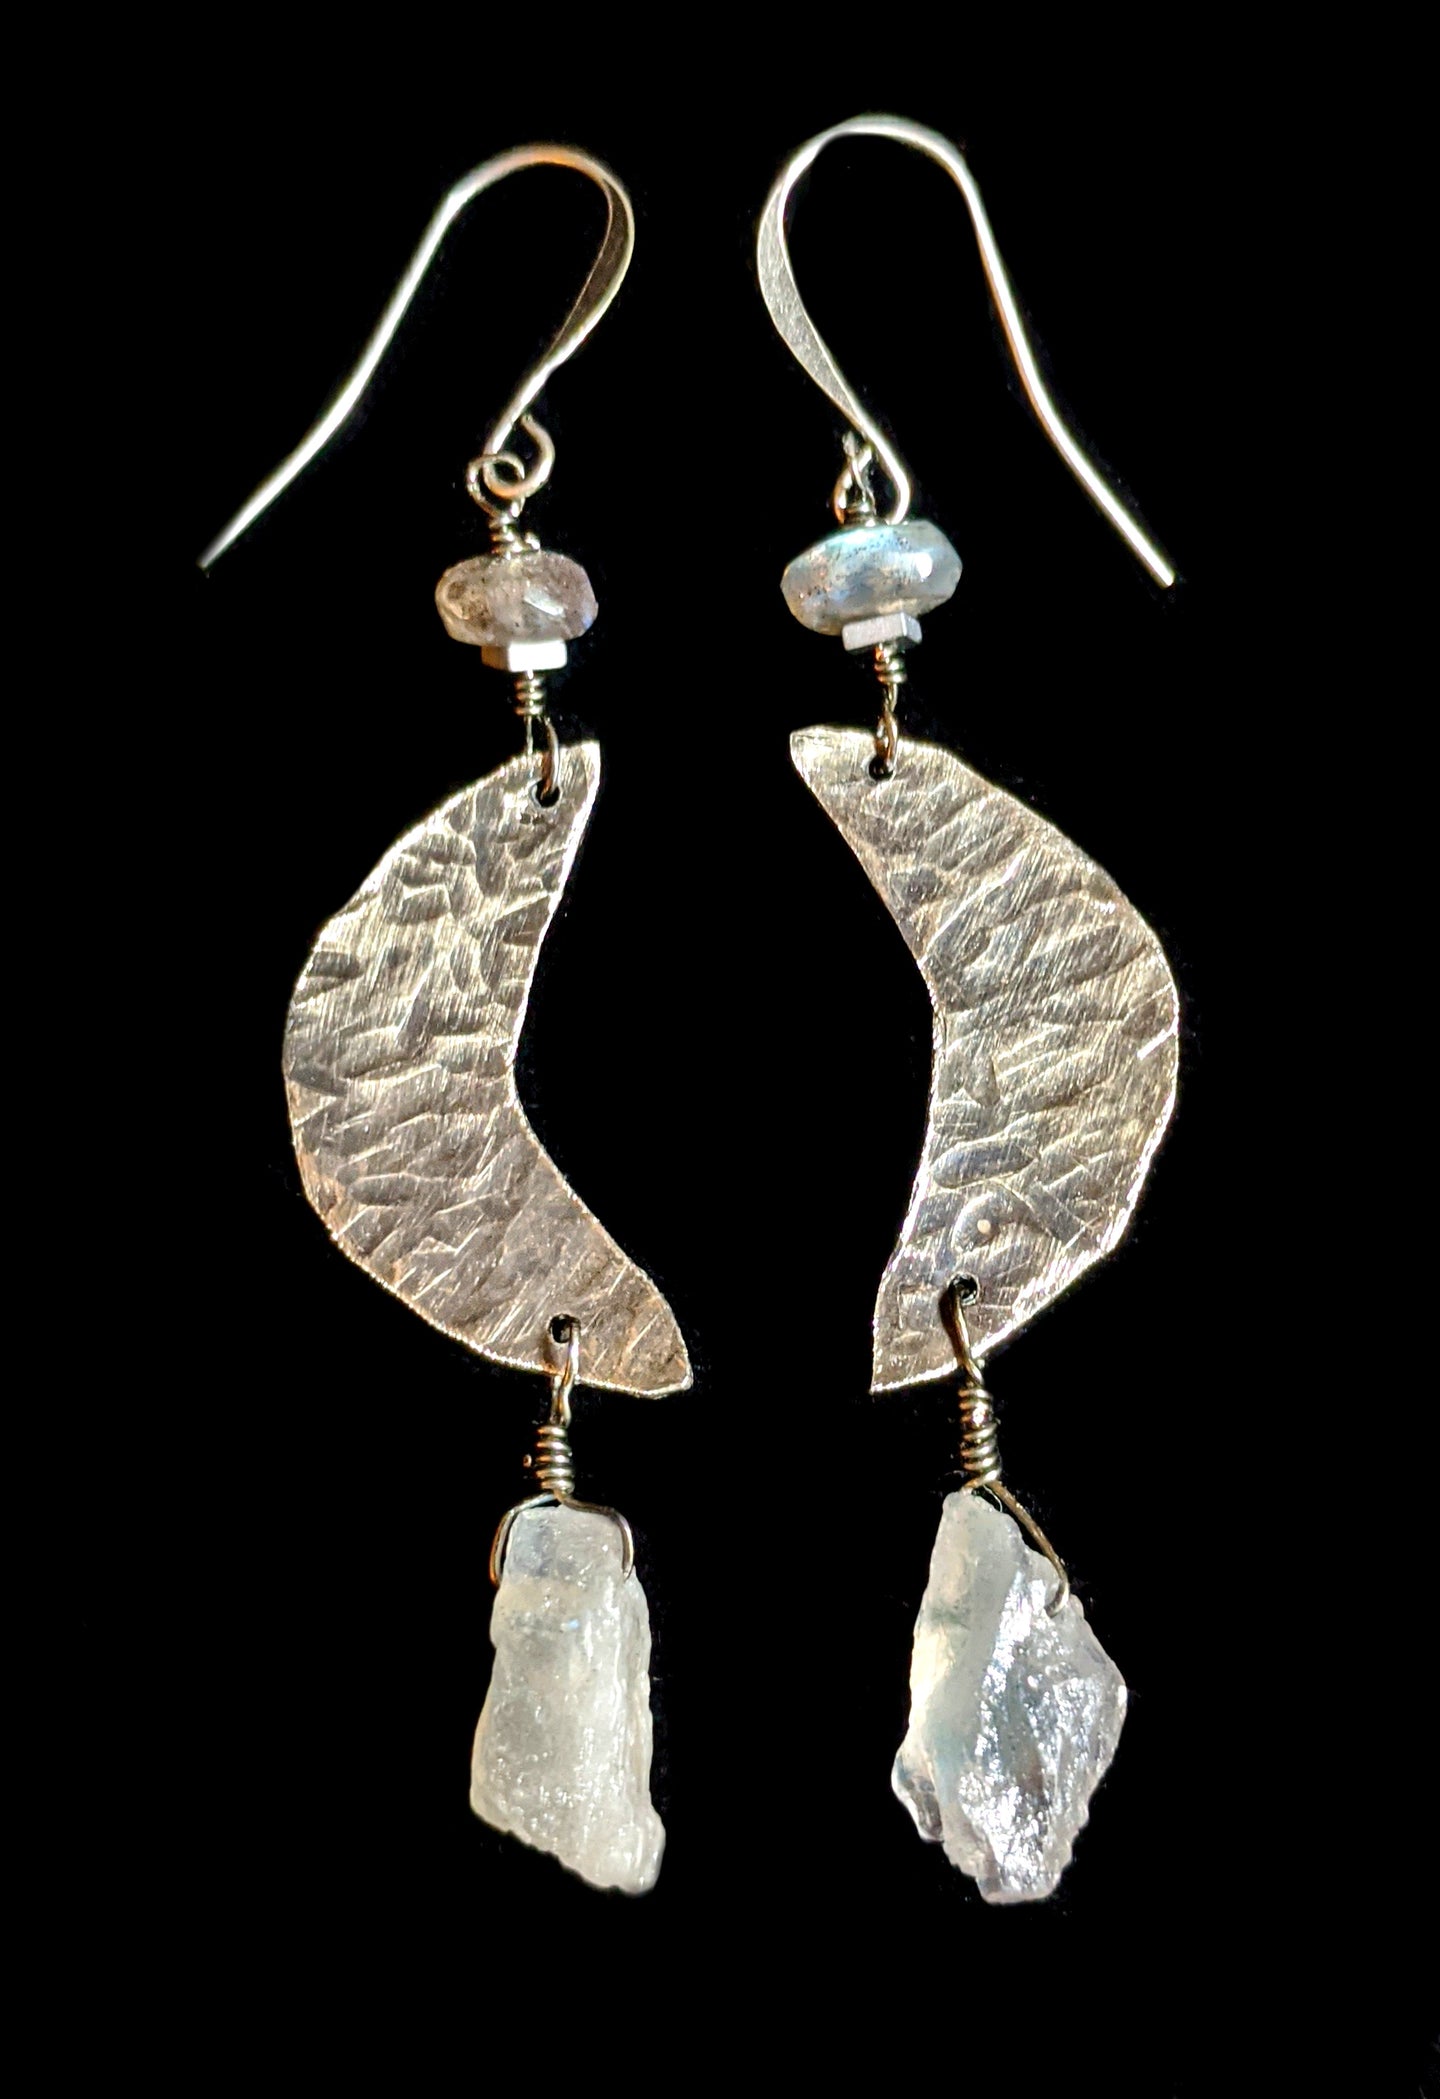 nickel silver moon & labradorite earrings - sunroot studio